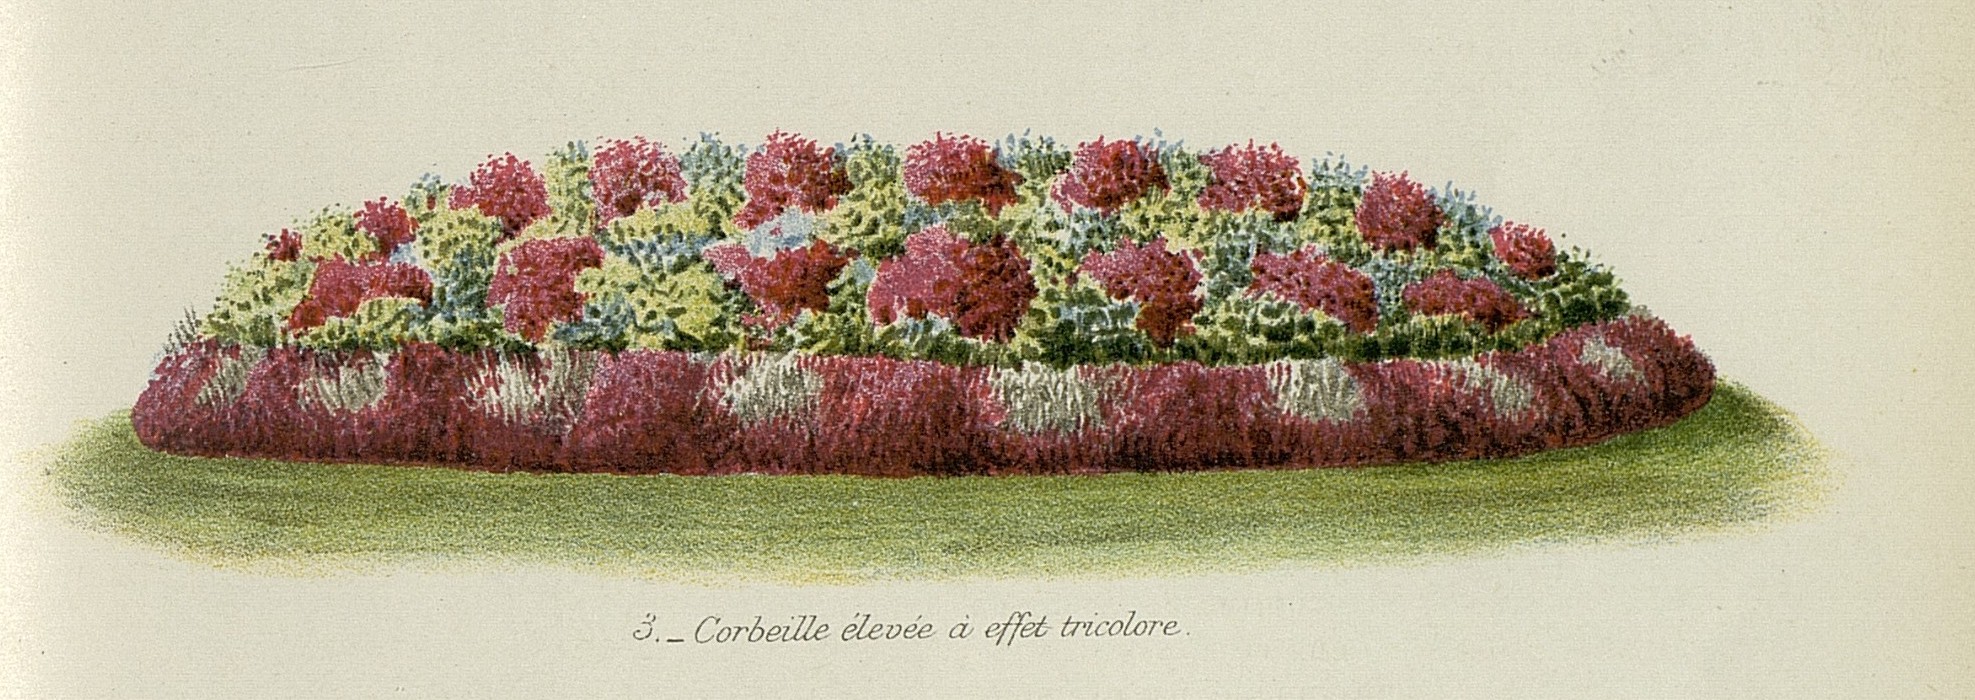 Corbeille élevée à effet tricolore, La Revue Horticole, 1905